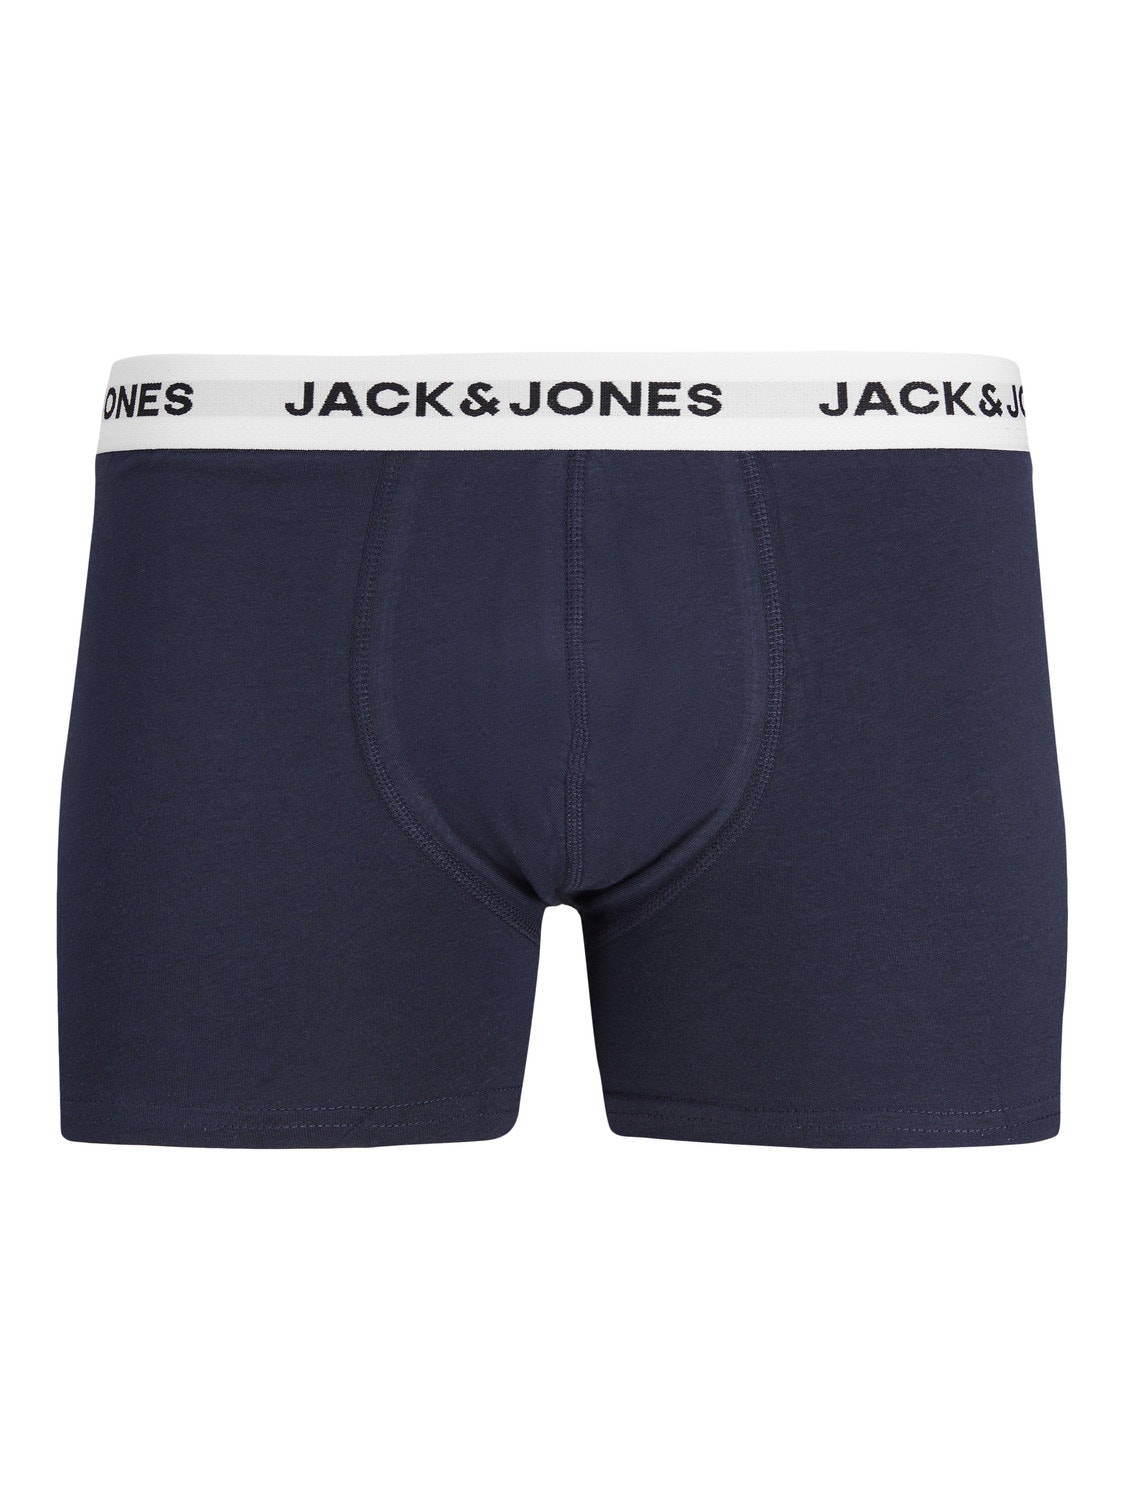 Jack & Jones 5-pack Trunks -Forest Night - 12214455